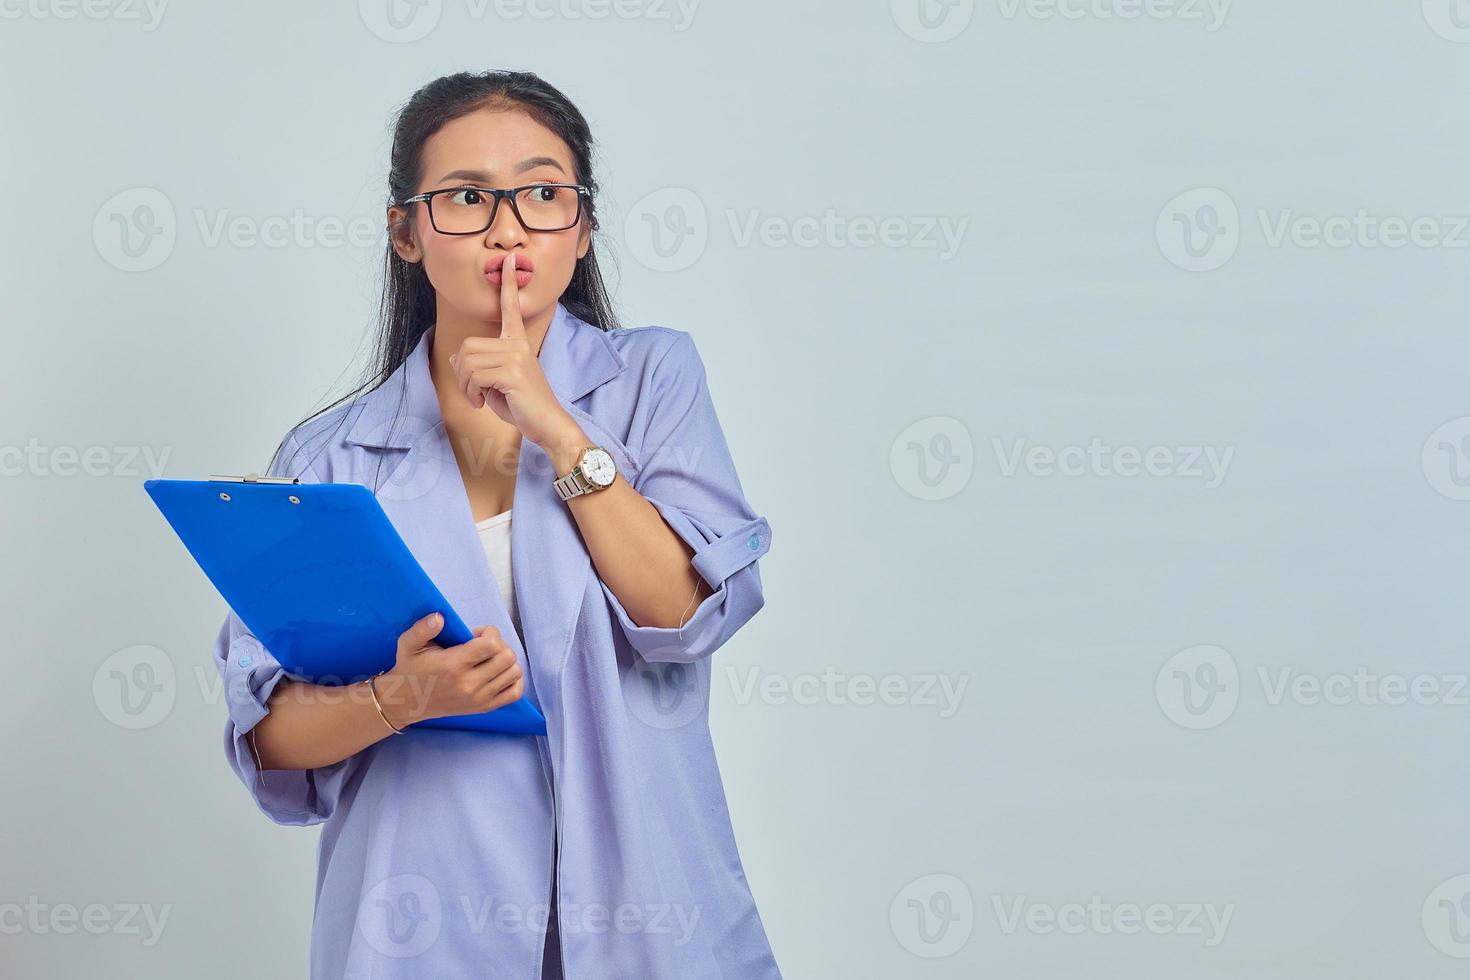 portret van mooie jonge aziatische vrouw die een documentmap vasthoudt en een stil gebaar maakt dat geheim deelt op een paarse achtergrond foto